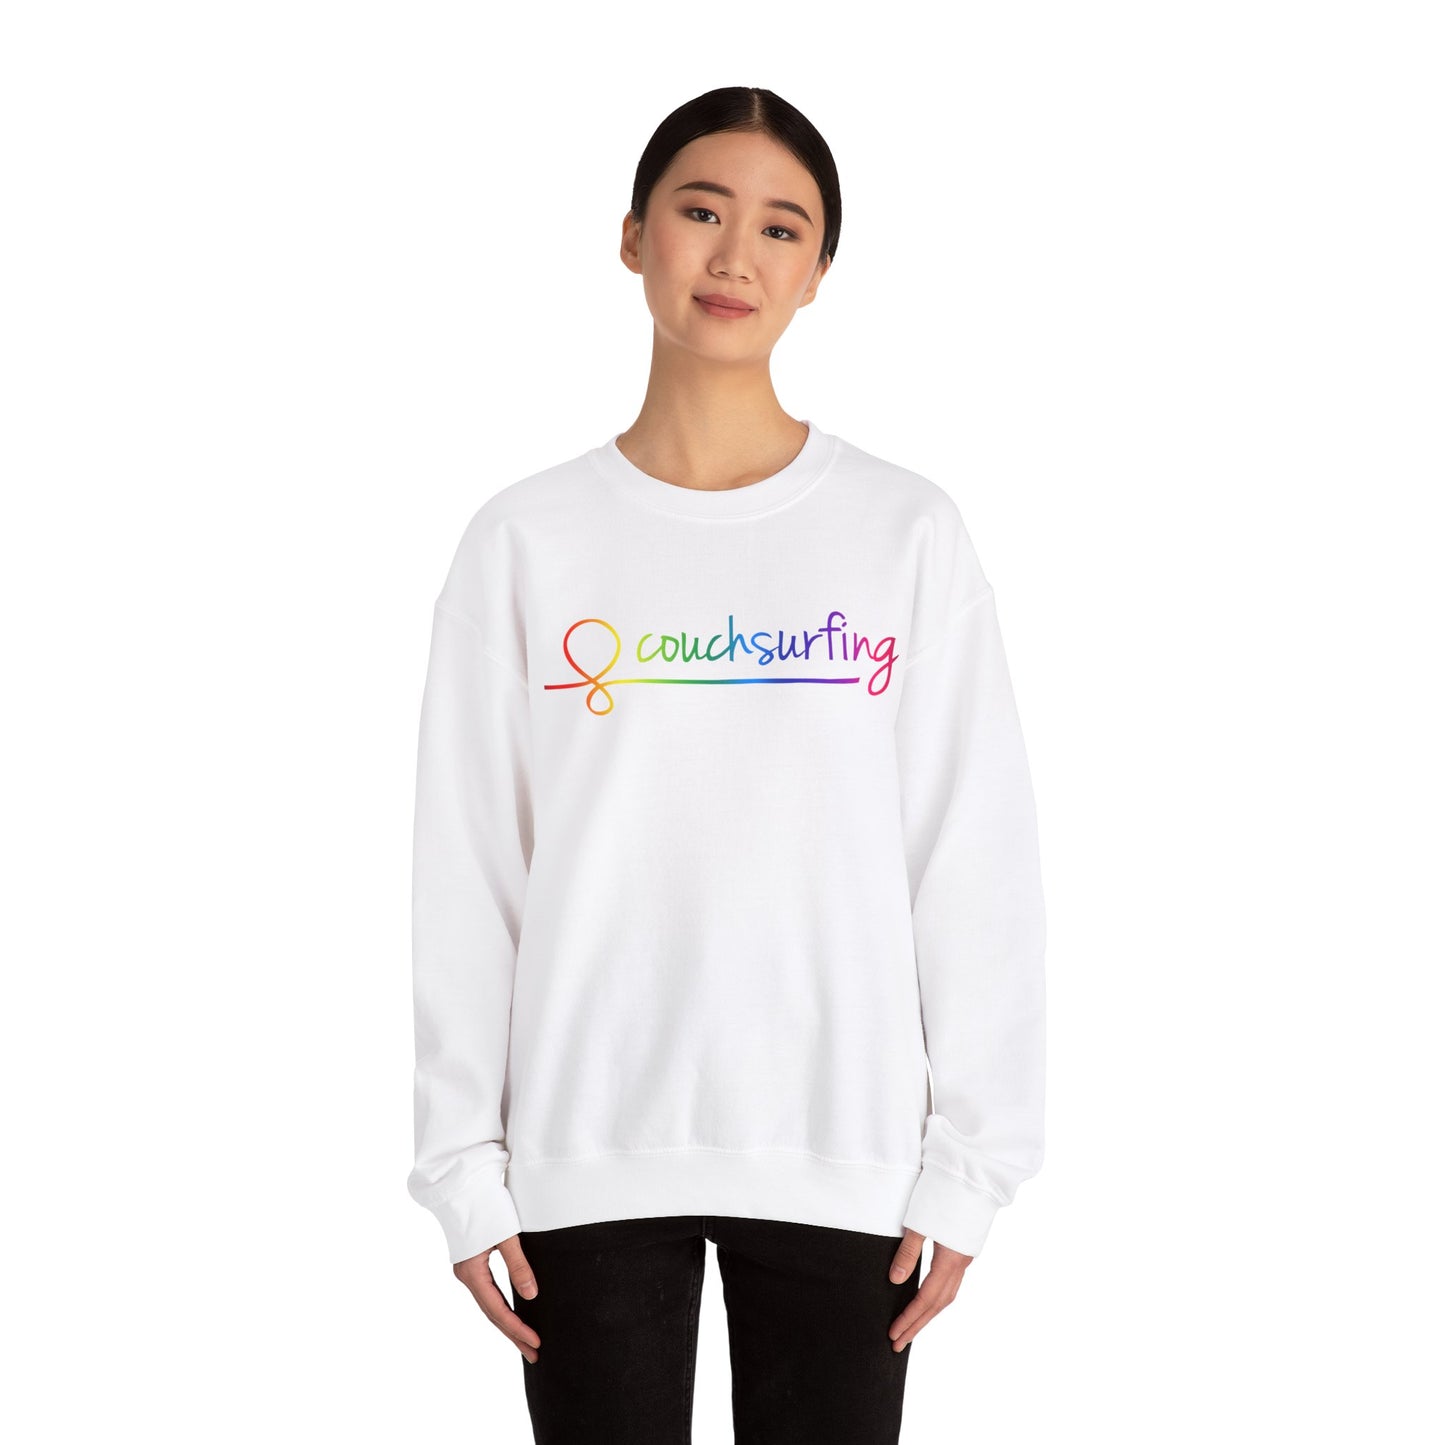 The Pride Crewneck Sweatshirt